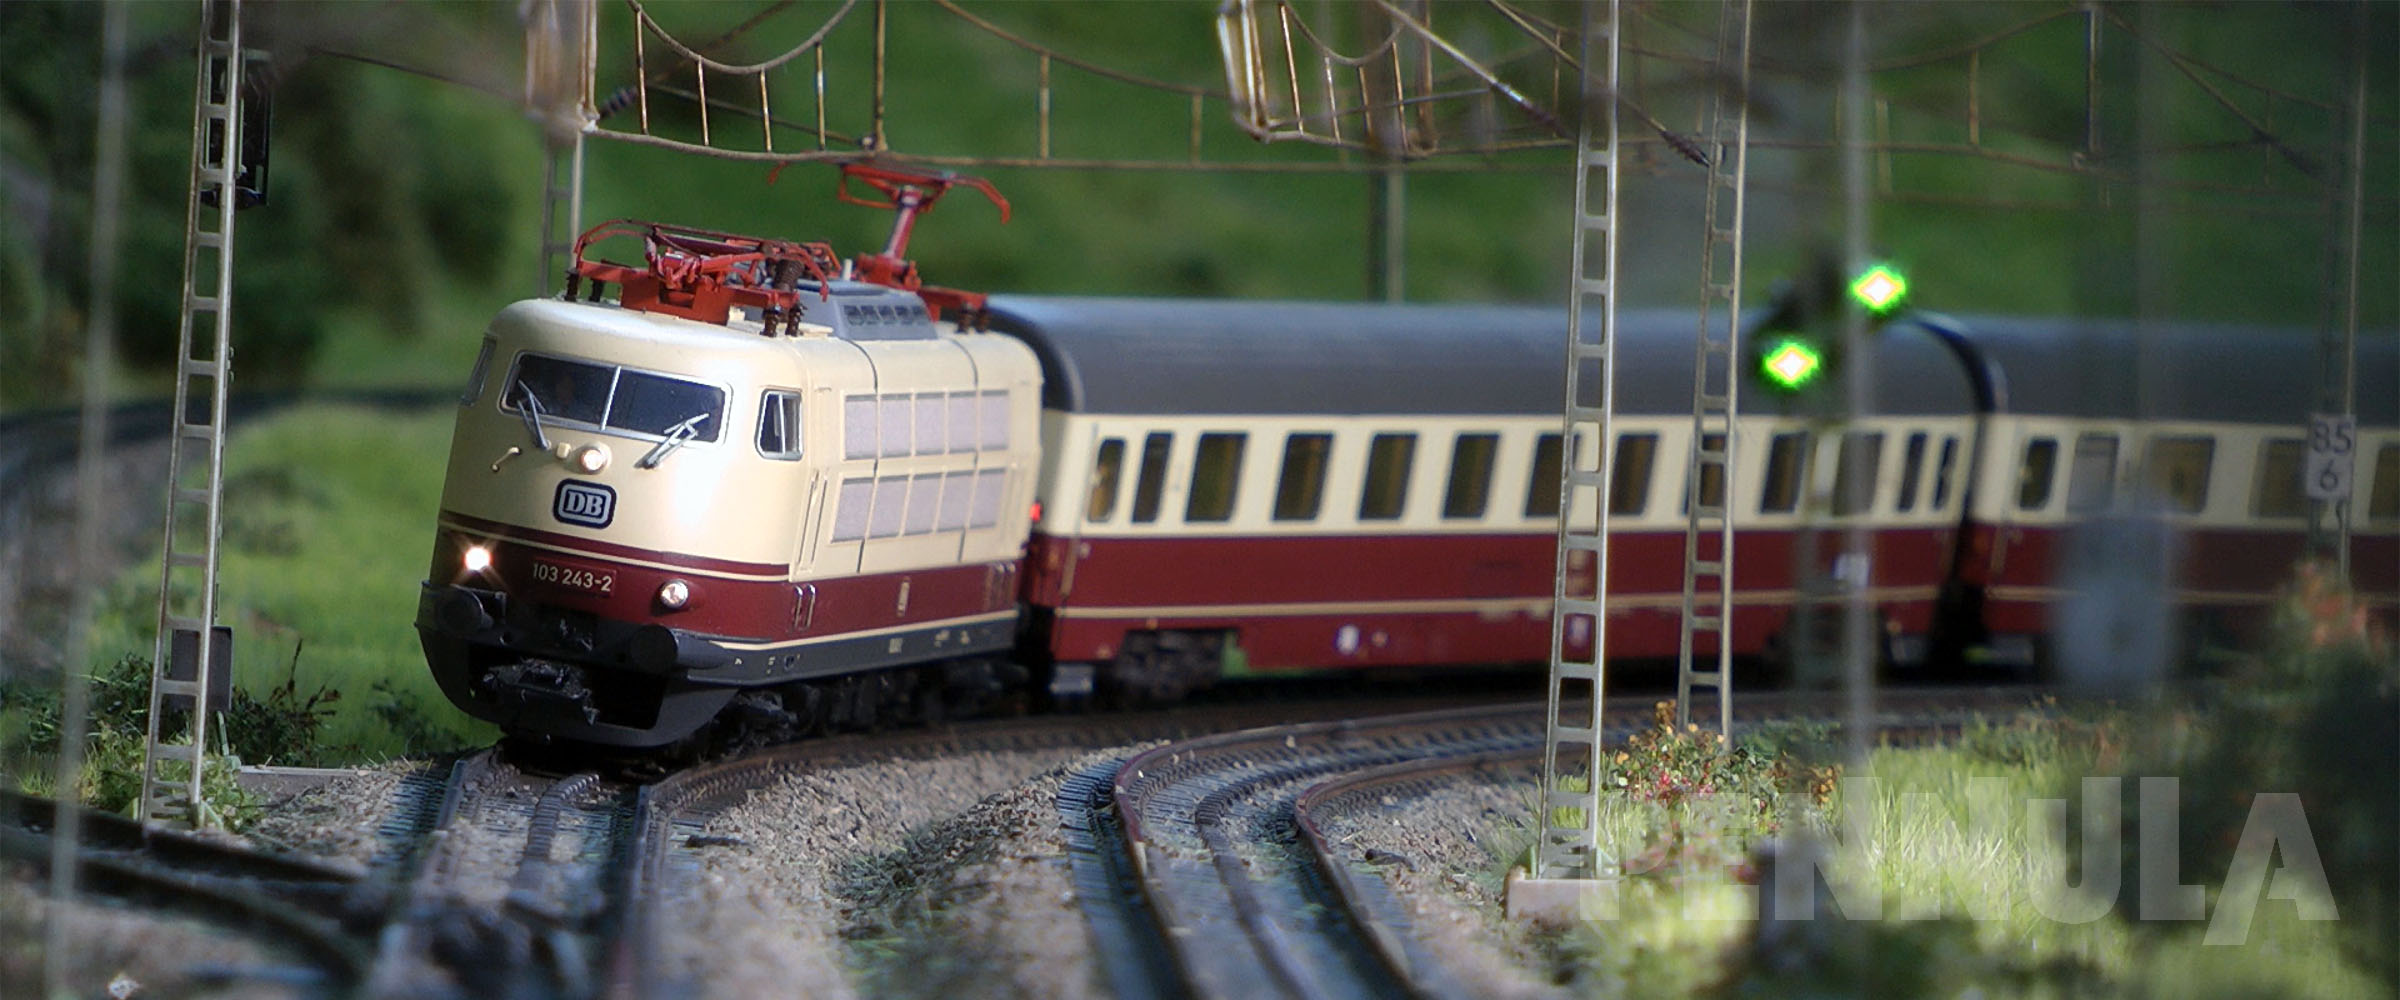 Modellzüge auf der Paradestrecke auf der Märklin Modellbahn Lindental